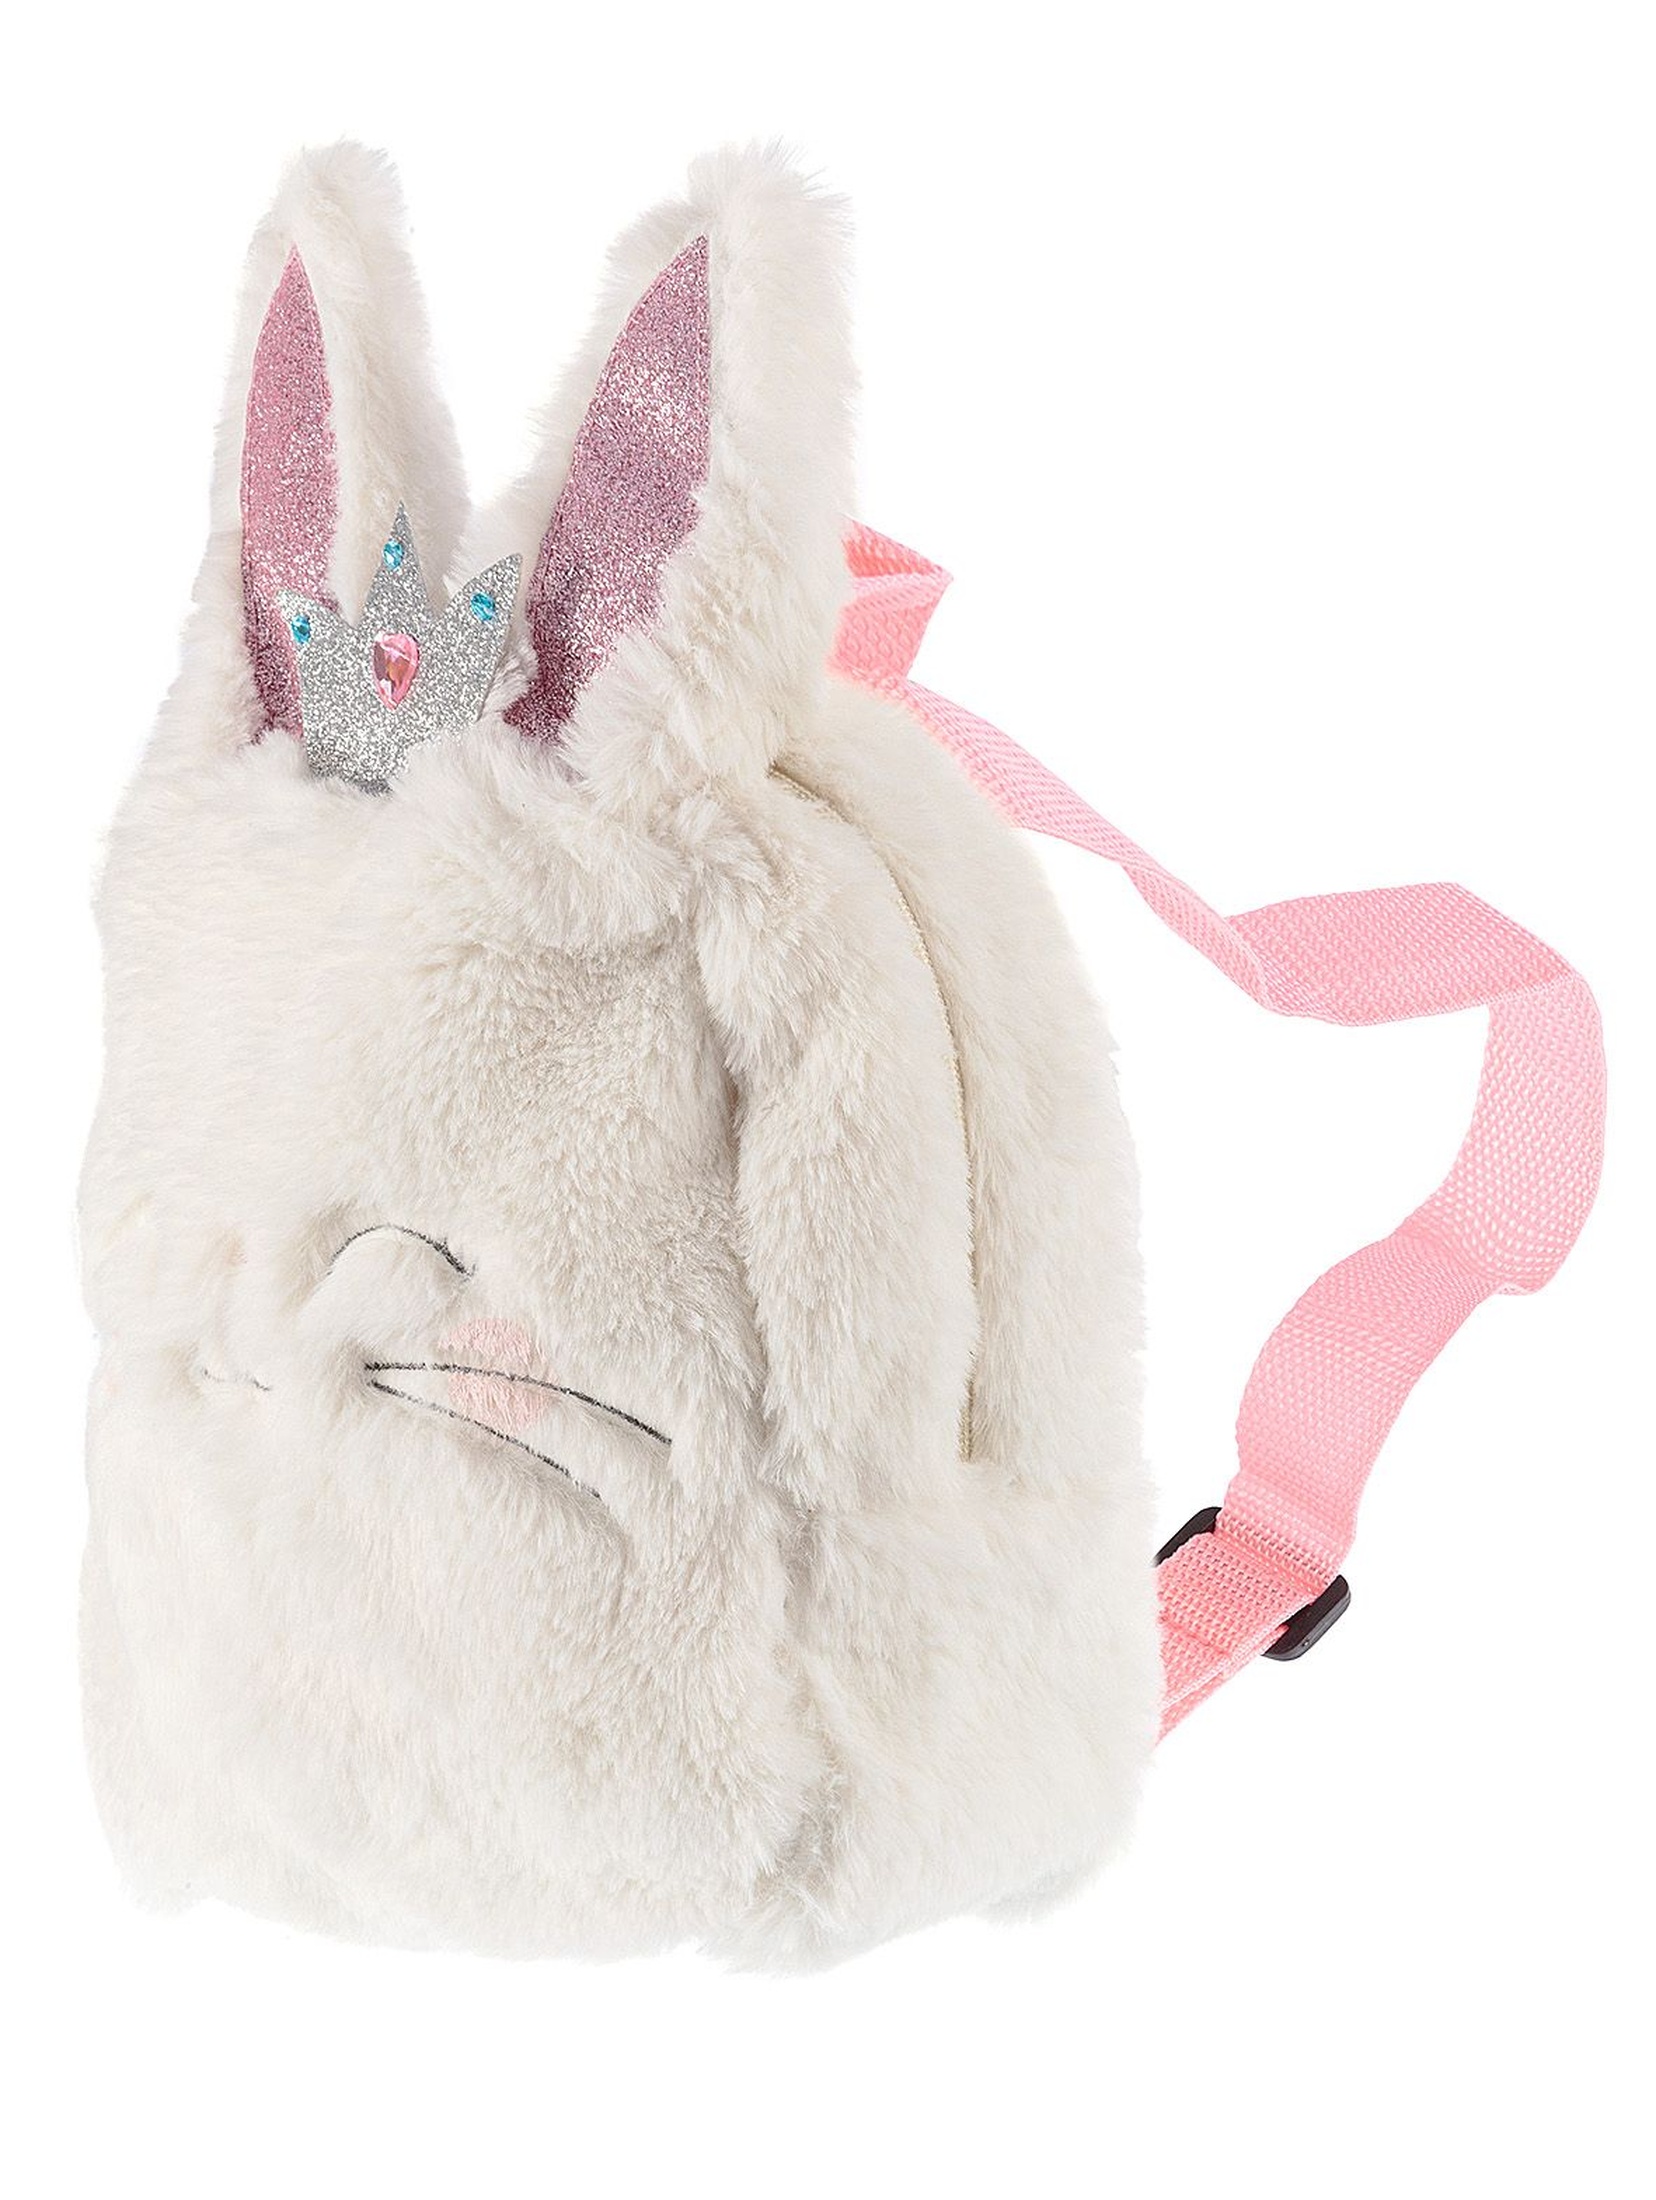 Plecak dla dziewczynki- królik